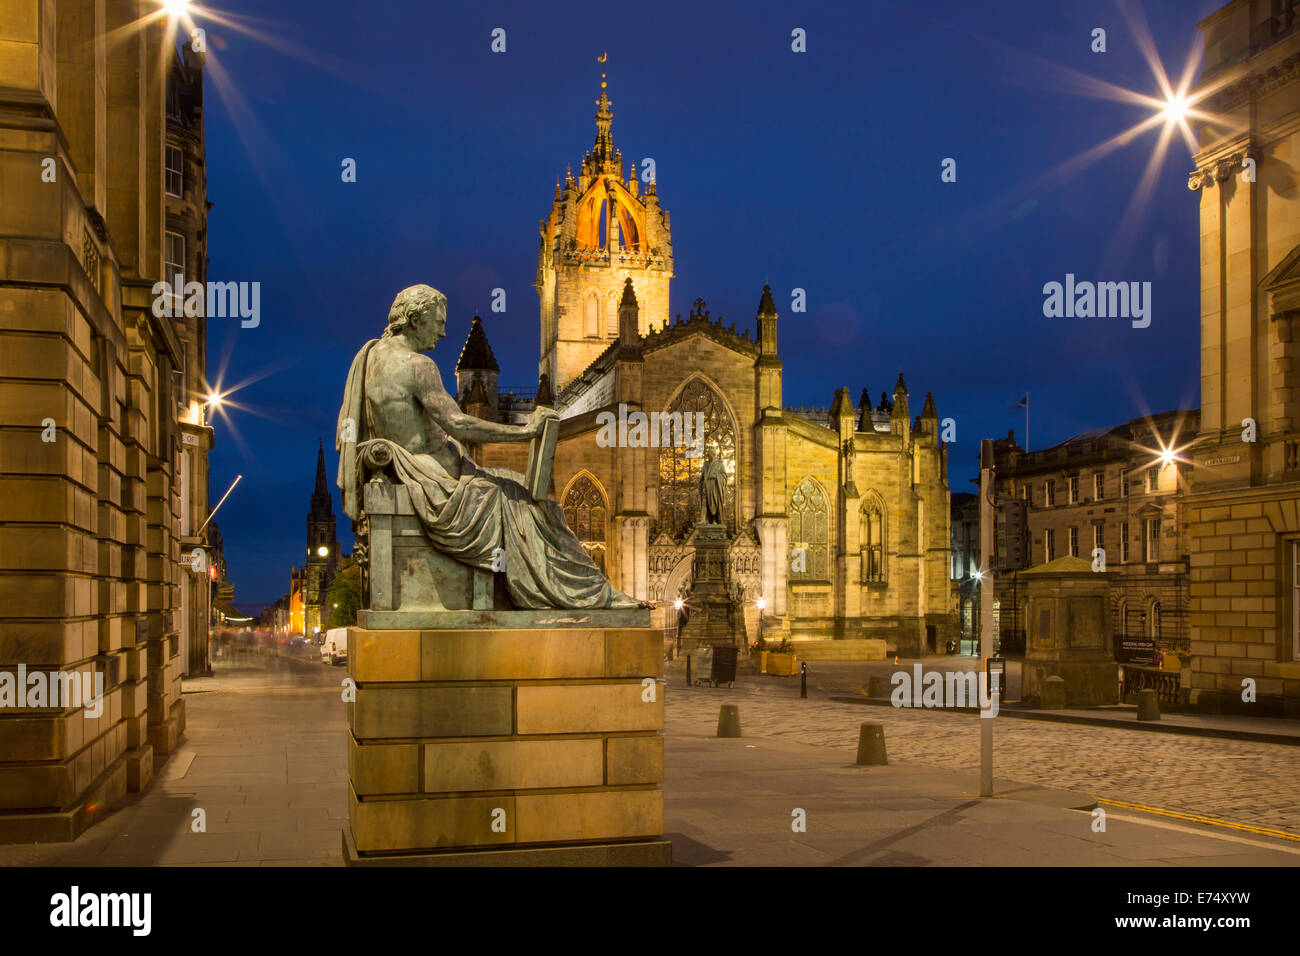 Twilight-Blick auf die Royal Mile mit St. Giles Cathedral und Statue des schottischen Philosophen David Hume, Edinburgh, Schottland Stockfoto